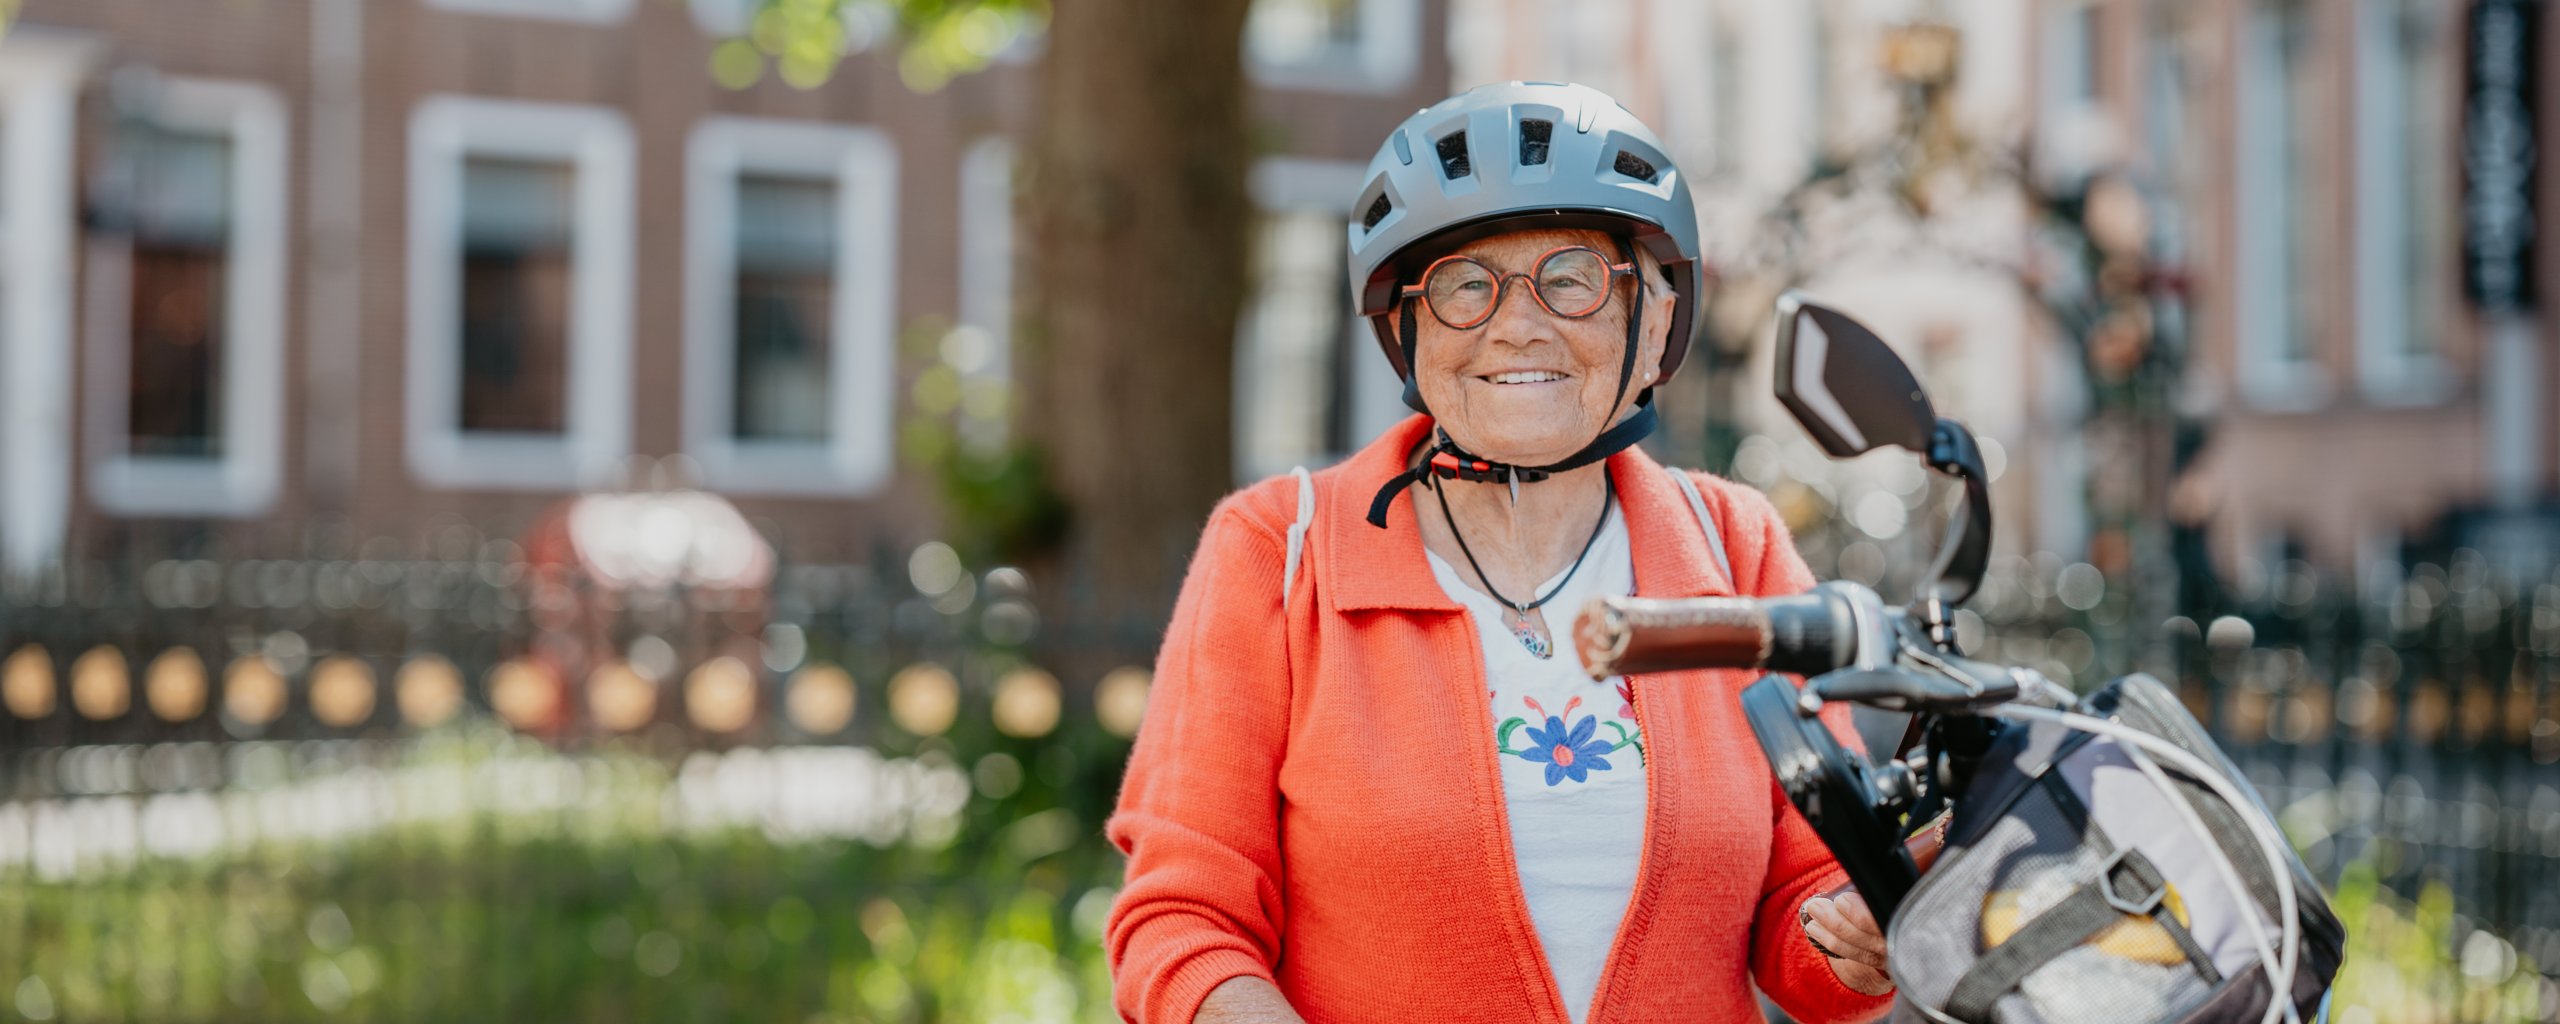 oudere dame met fietshelm op en fiets in de hand